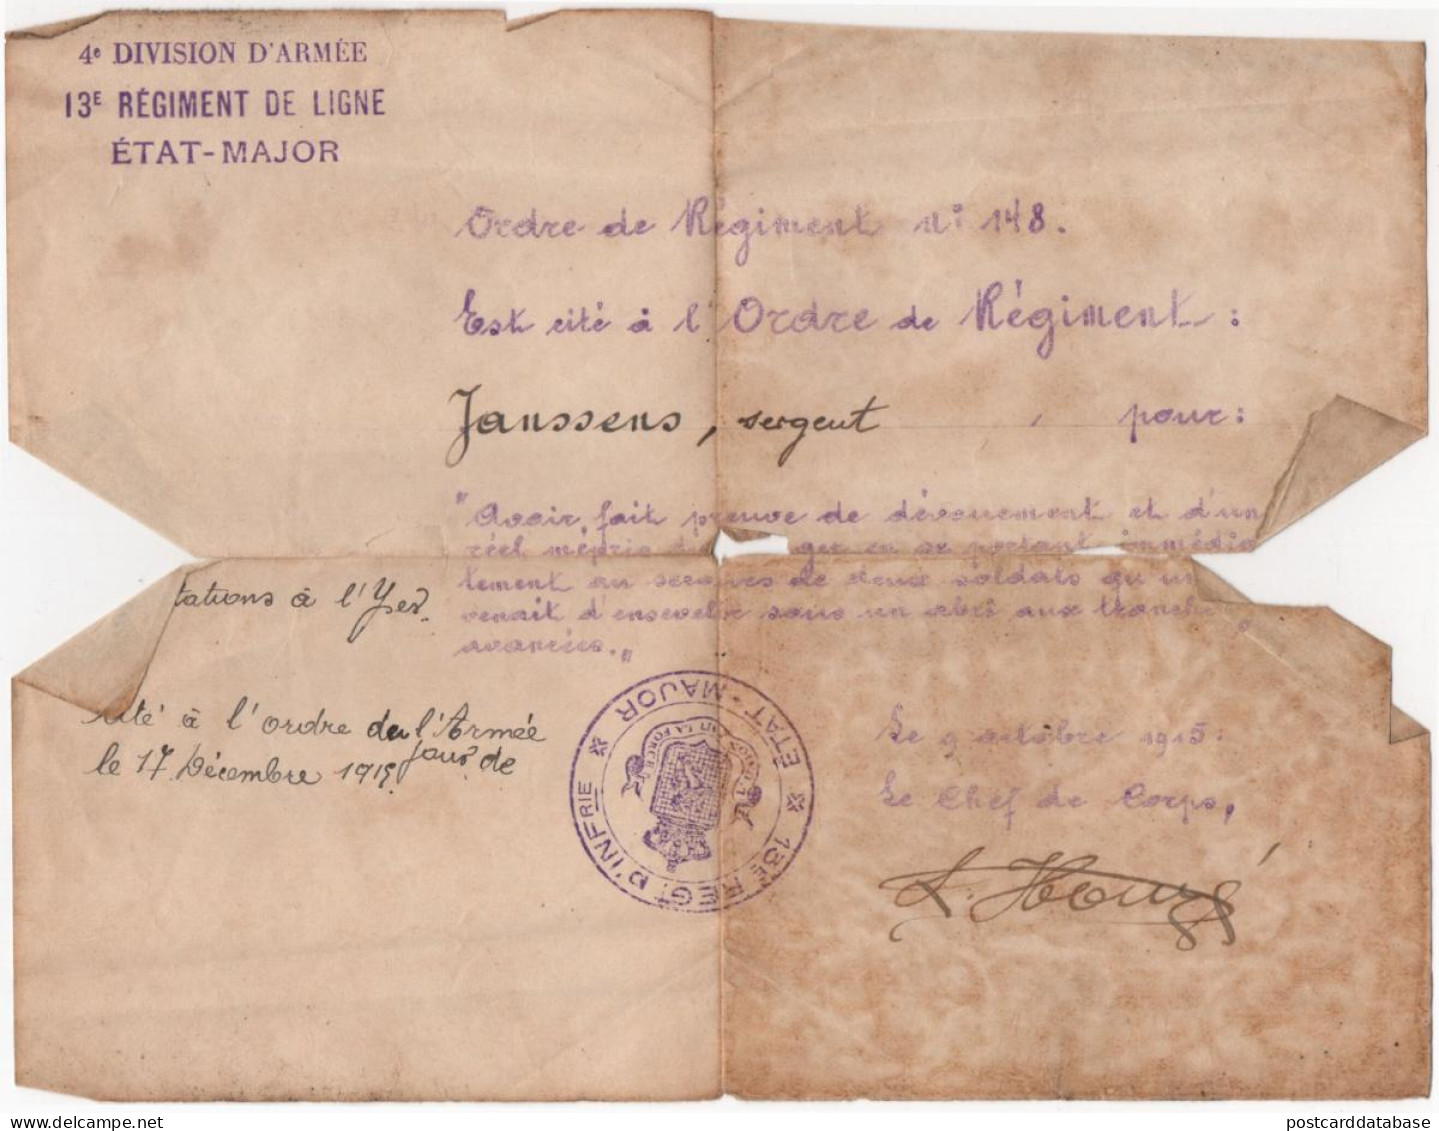 Etat-Major - Ordre De Regiment 1915 - 4e Division D'Armée - 13e Régiment De Ligne - Belgique Yser - Documenti